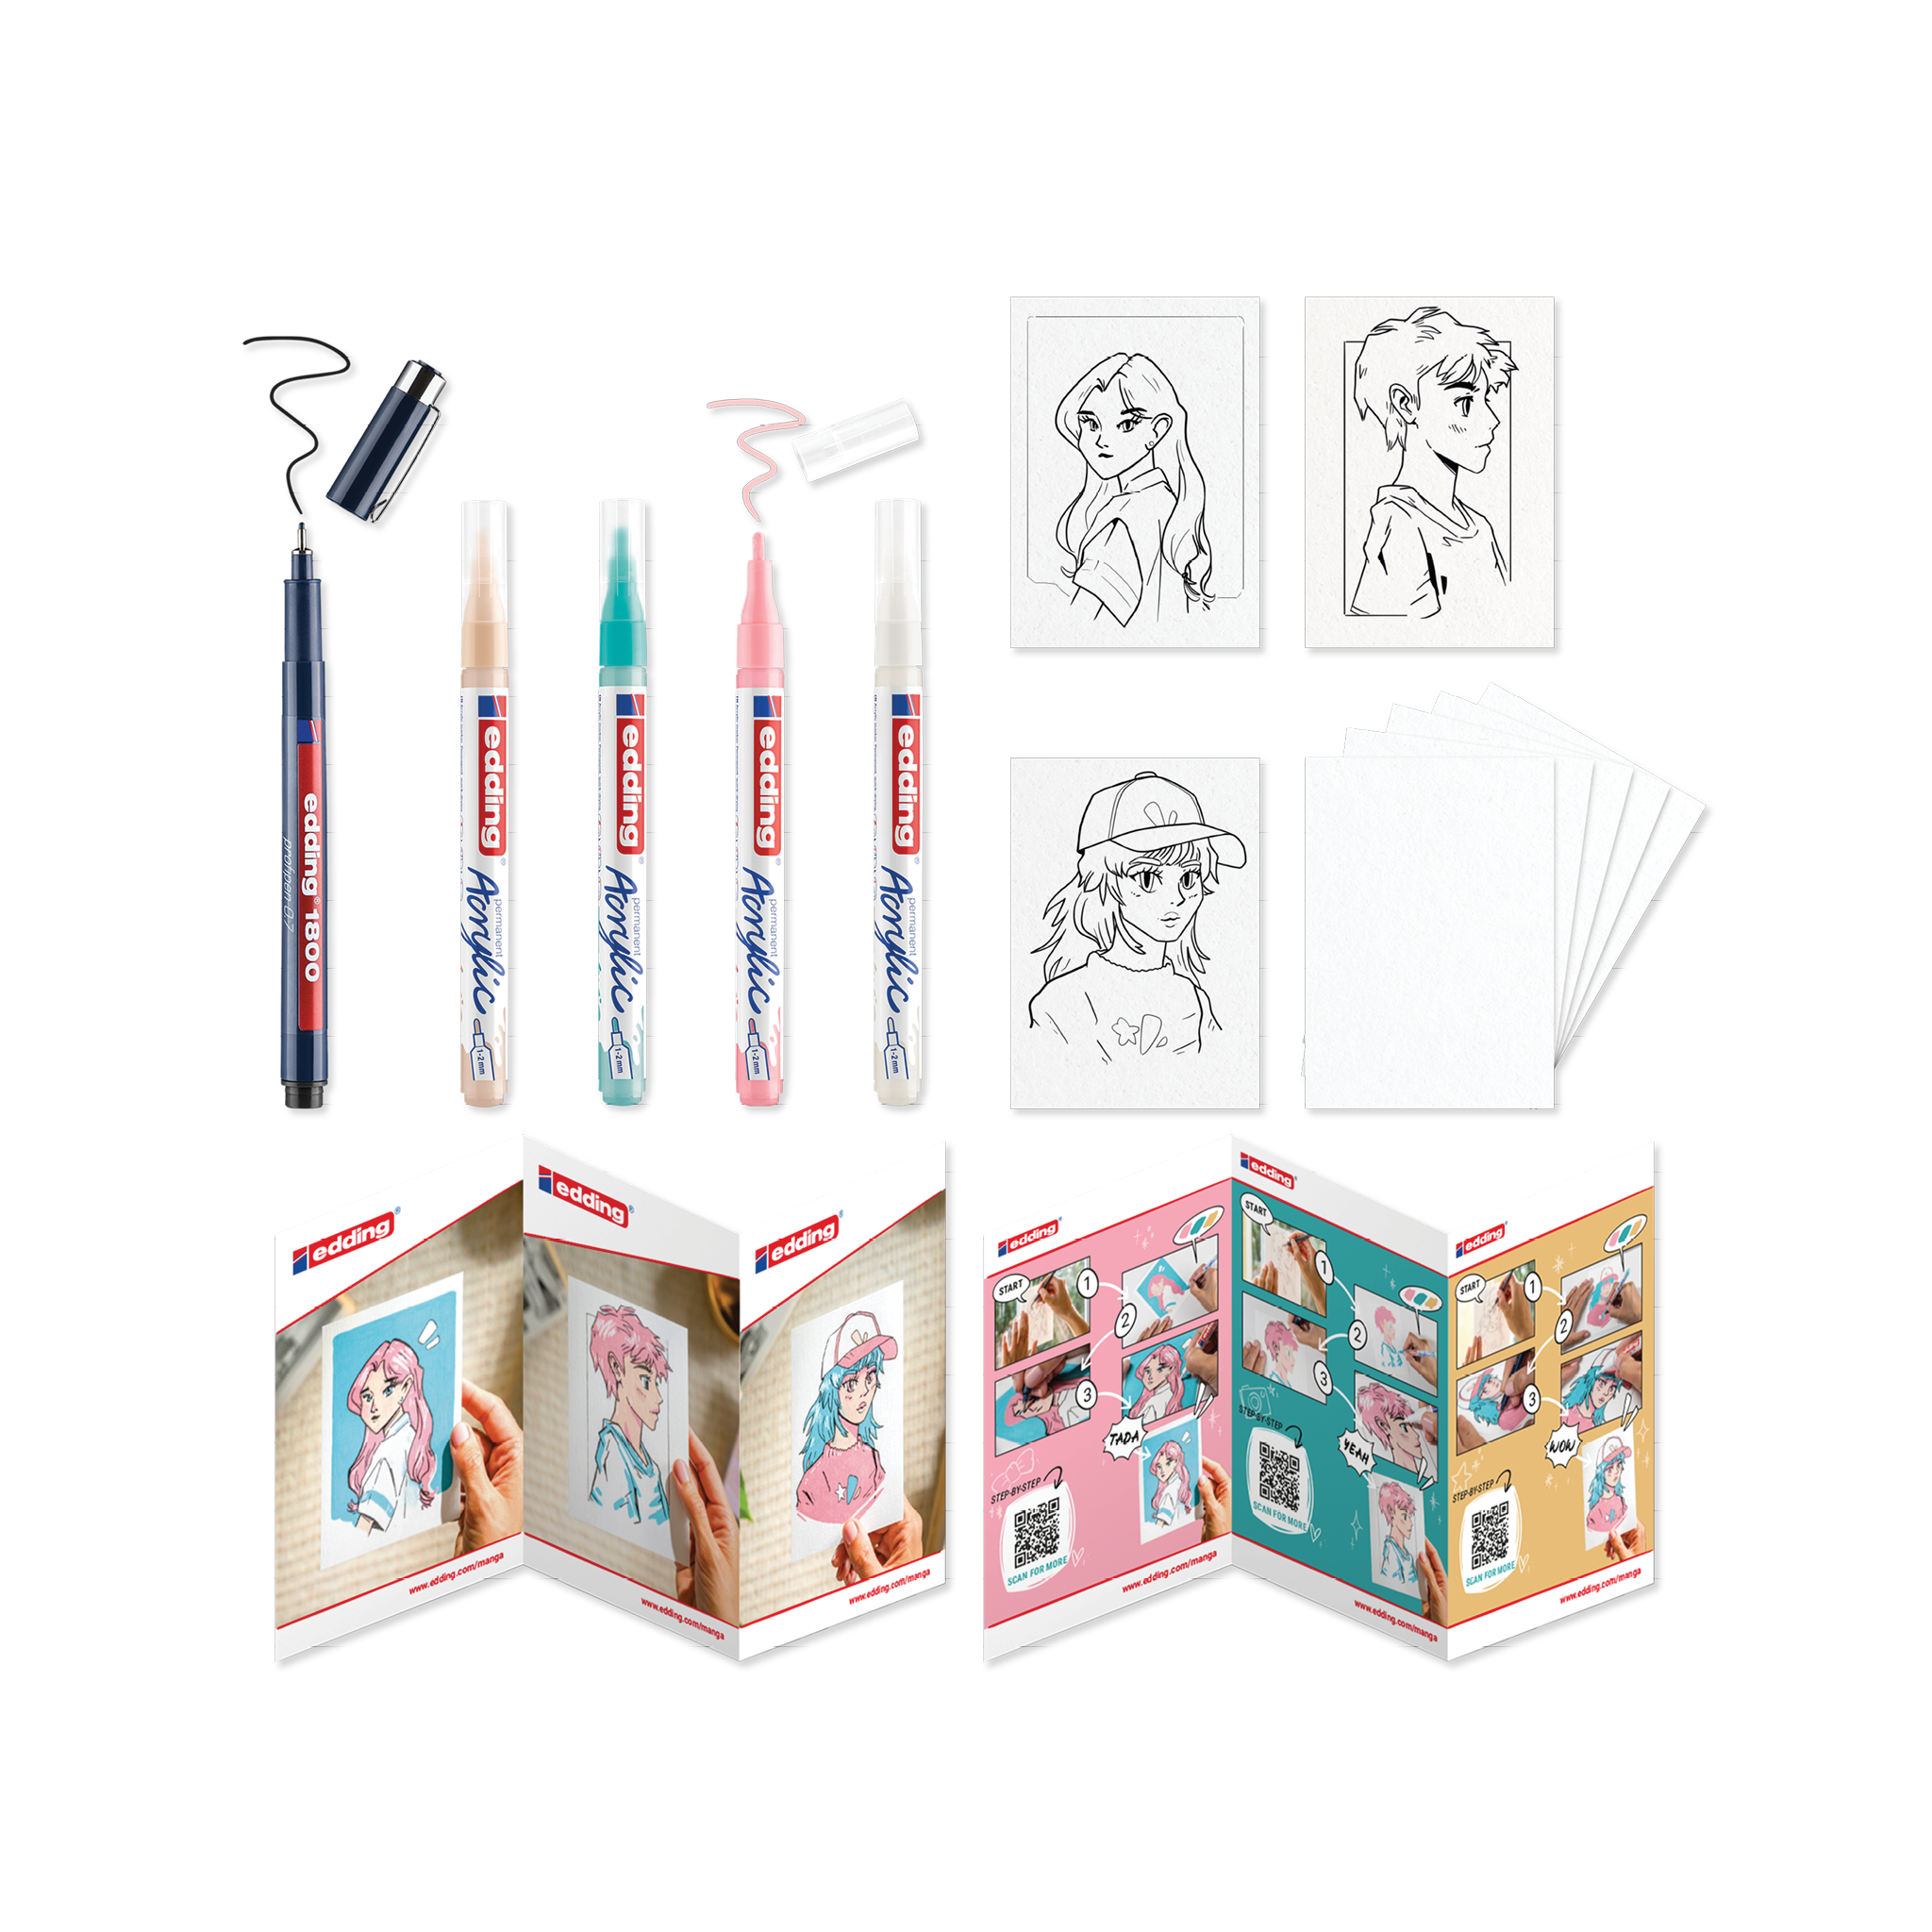 Eine Sammlung von edding Acryl Kreativset Manga mit Markern, leeren Papierkarten und einer faltbaren Ausstellungstafel mit verschiedenen Kunstwerken.